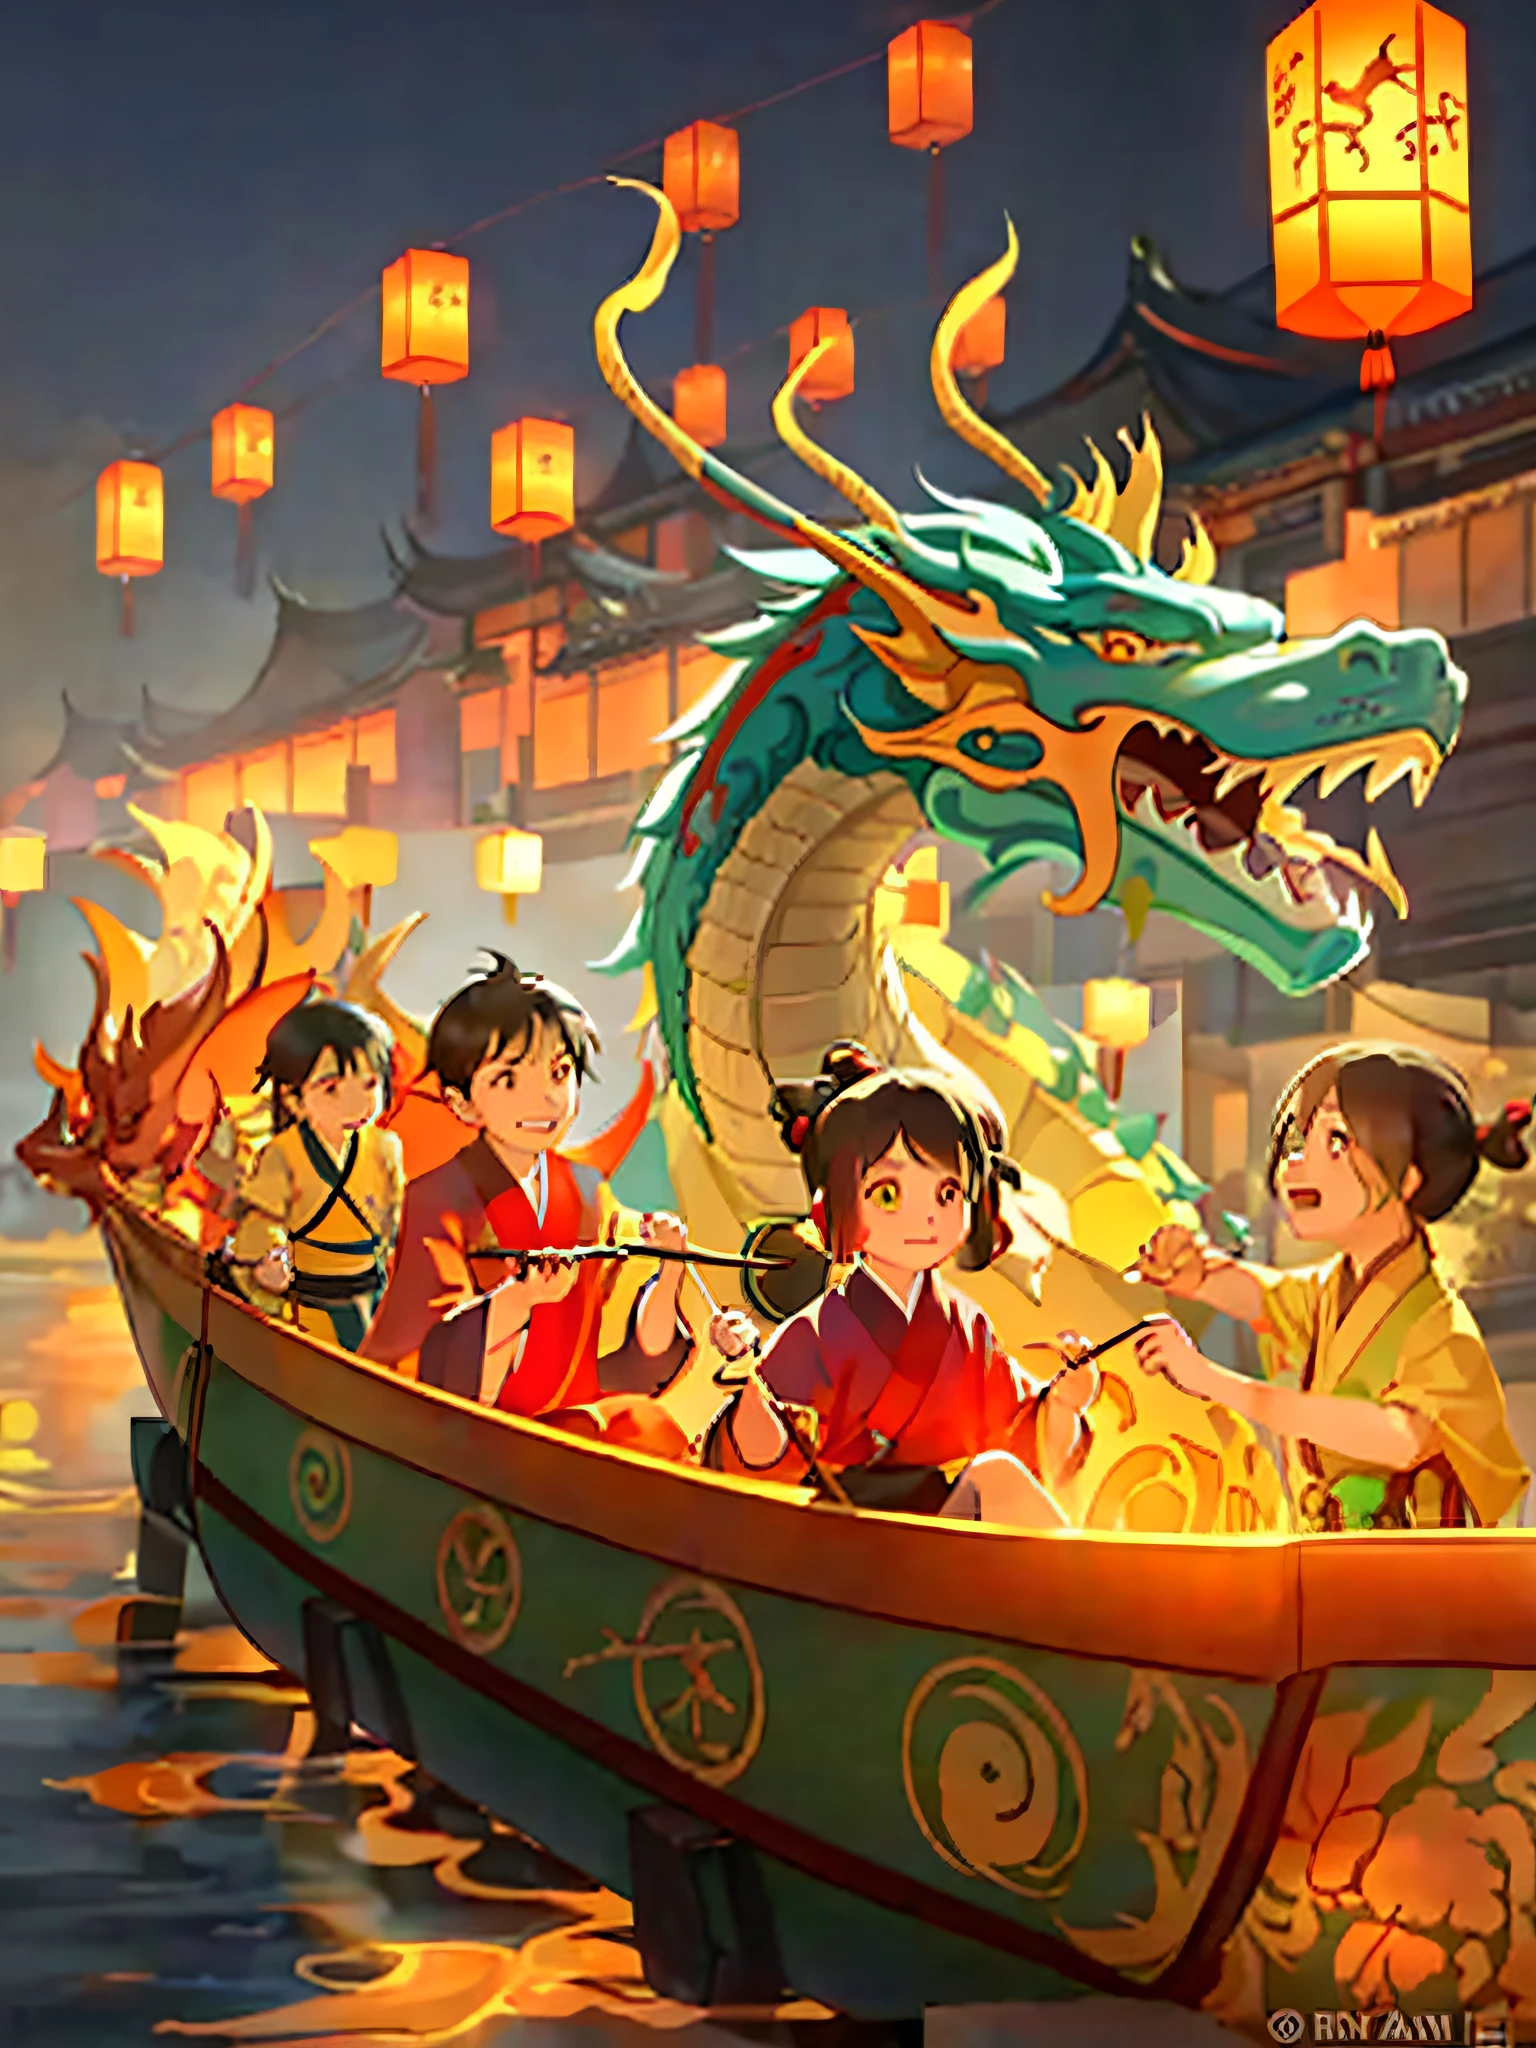 เทศกาลเรือมังกร, เทศกาลจีน, a lot of super happy cute ancient Chinese little boys and girls sitting on a เรือมังกร, ถือพาย, two เรือมังกรs rowing forward, โคมลอยอยู่บนเรือ, เรือมังกร, ผู้เขียน: คูเล่เล่ย, หยาง เจ, เทศกาลหัวมังกรเหลือง, rossdraws แสงสว่างระดับโลก, โดย Ryan Ye, โดย เบยาร์ด วู, แฟนตาซีจีน, ยอดนิยมบน CGSTATION, ภาพประจำตัว, แนวคิดศิลปะมังกรจีน, โดย อาเธอร์ แพน, โดย หนี่ หยวนลู่, โดย หลี่ซ่ง